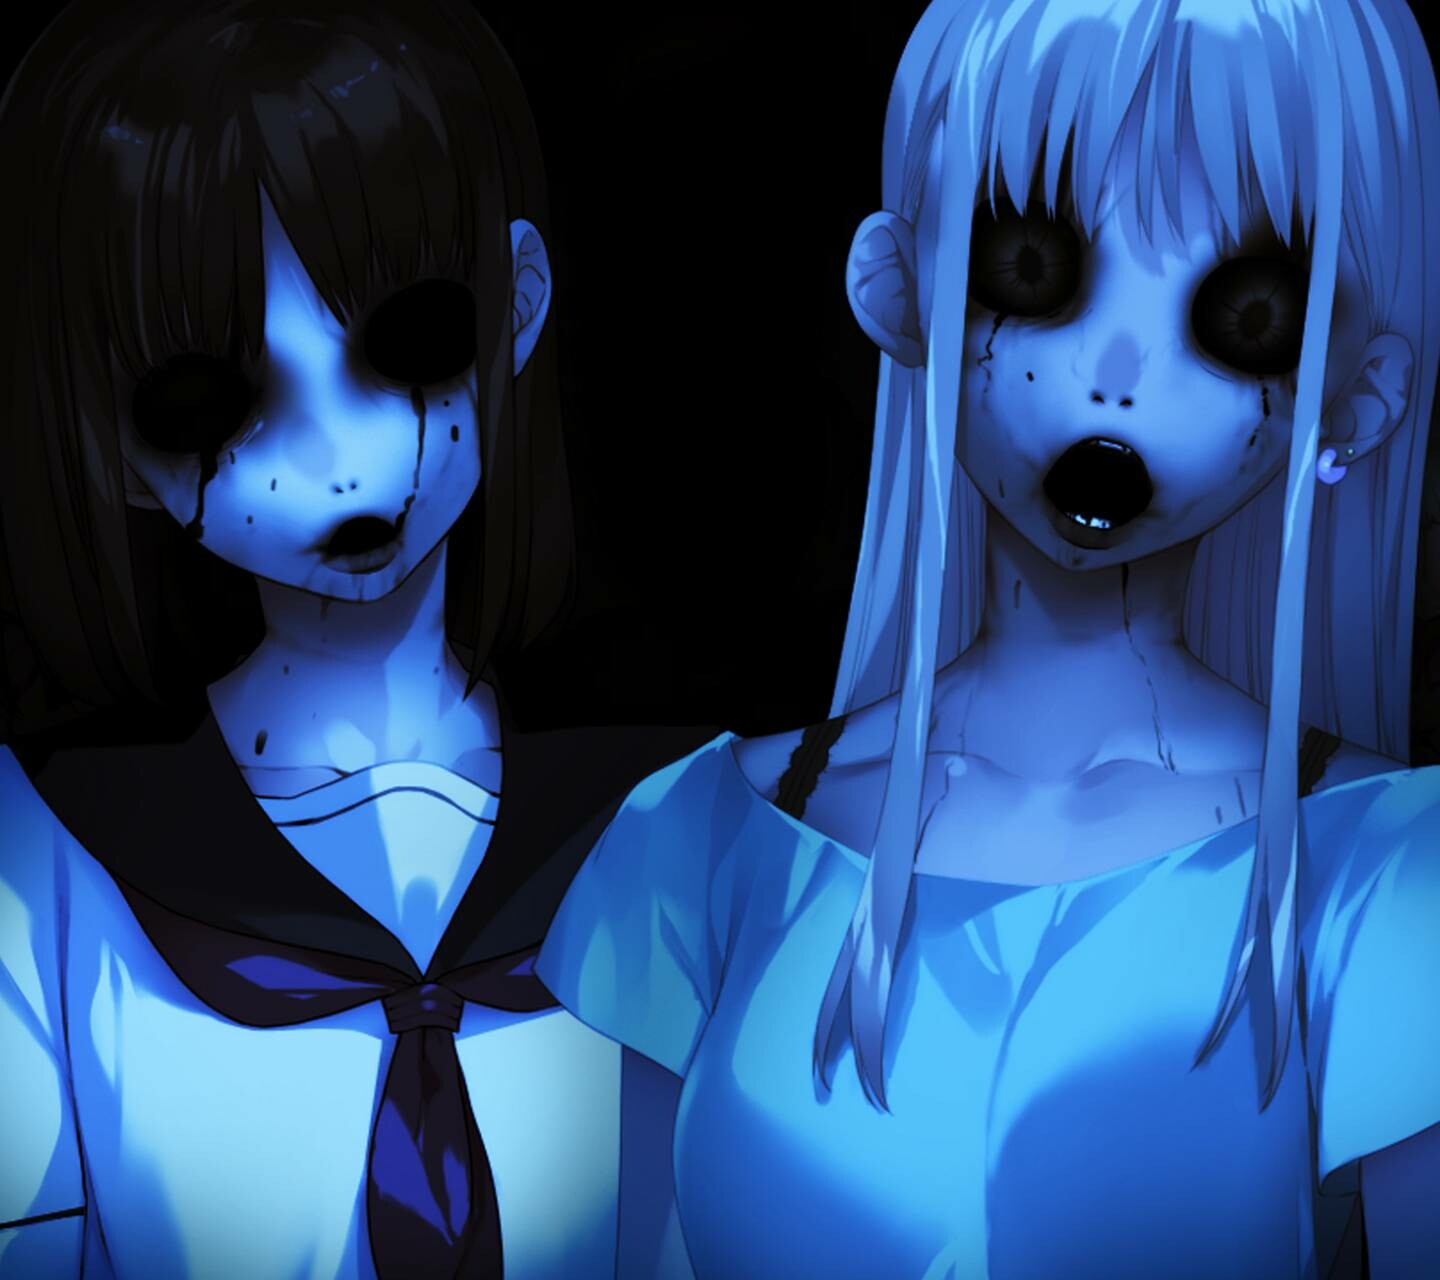 Creepy Anime Girl-Wallpaper by DarkS337 on DeviantArt